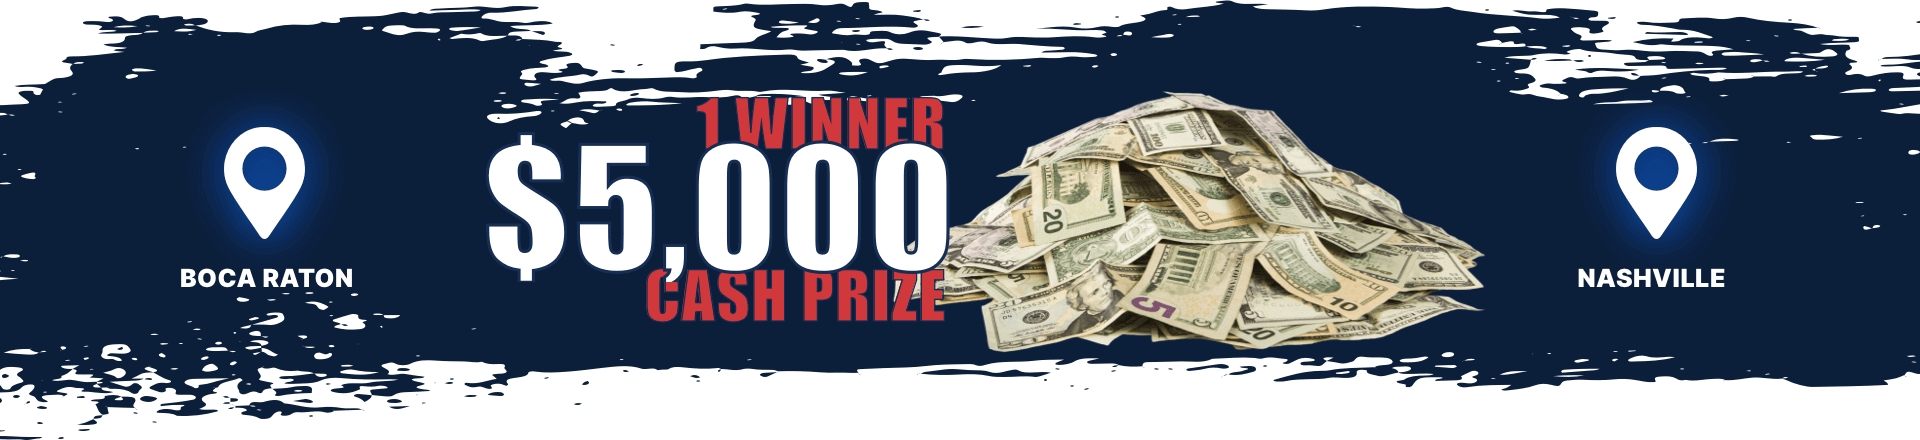 1 winner $5000 banner